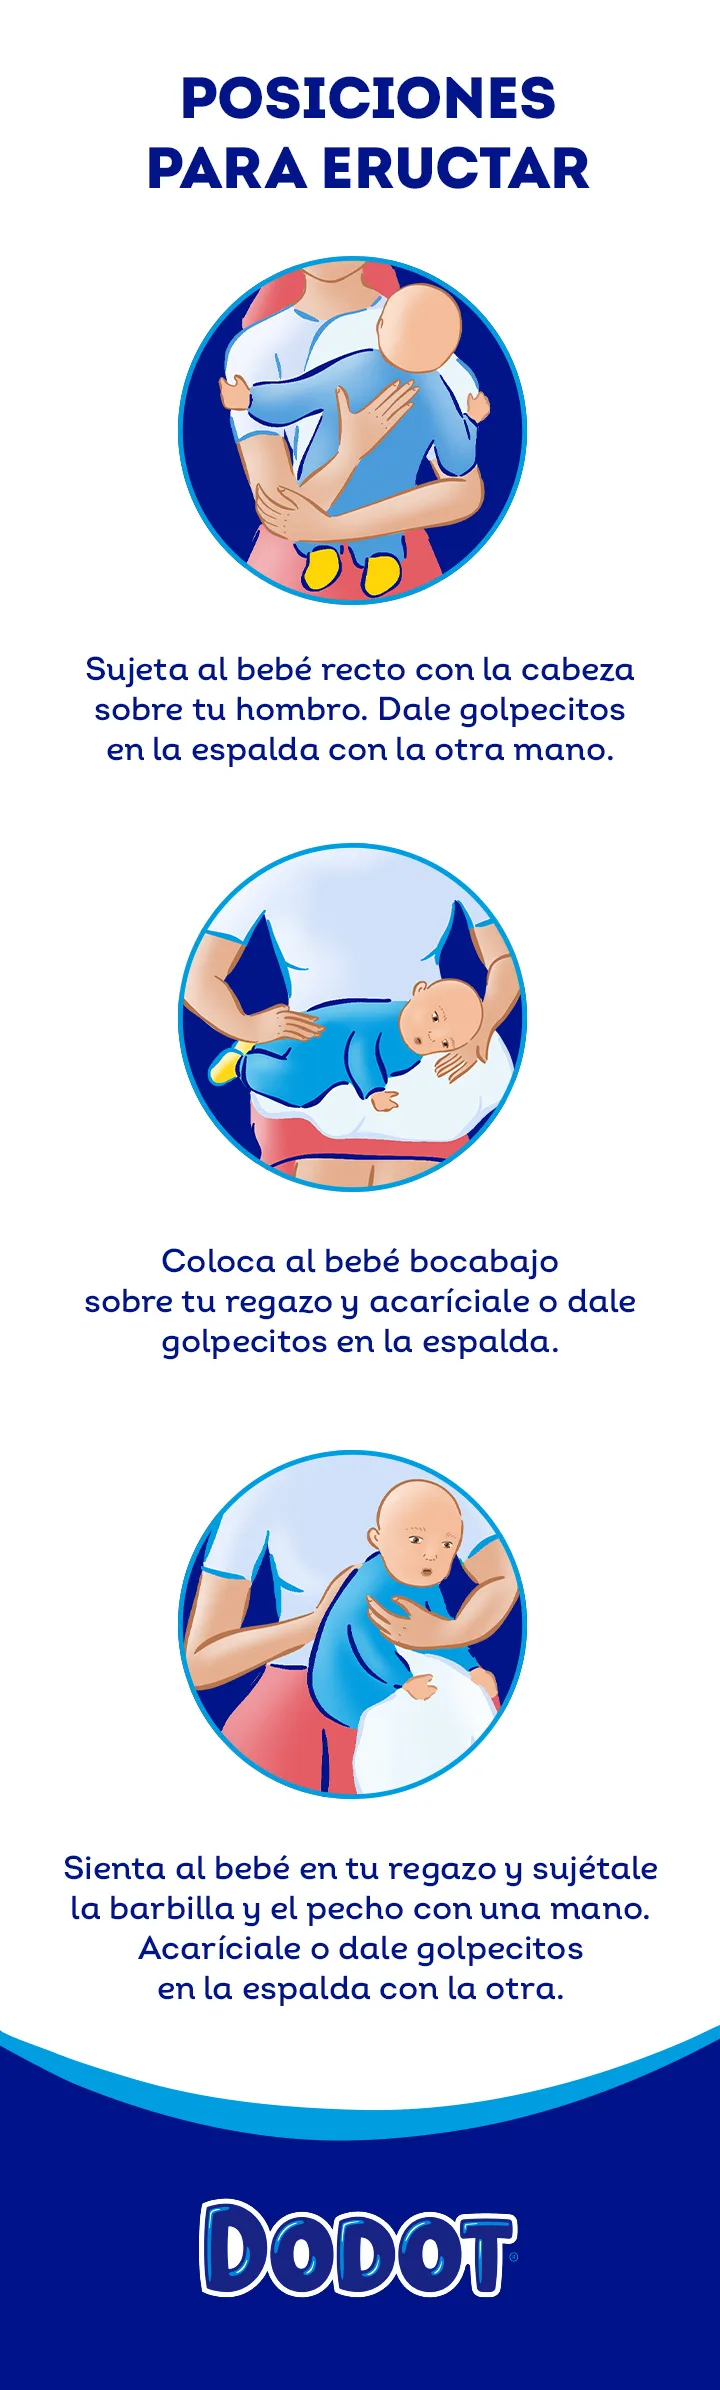 Consejos para establecer una rutina de baño relajante en el bebé